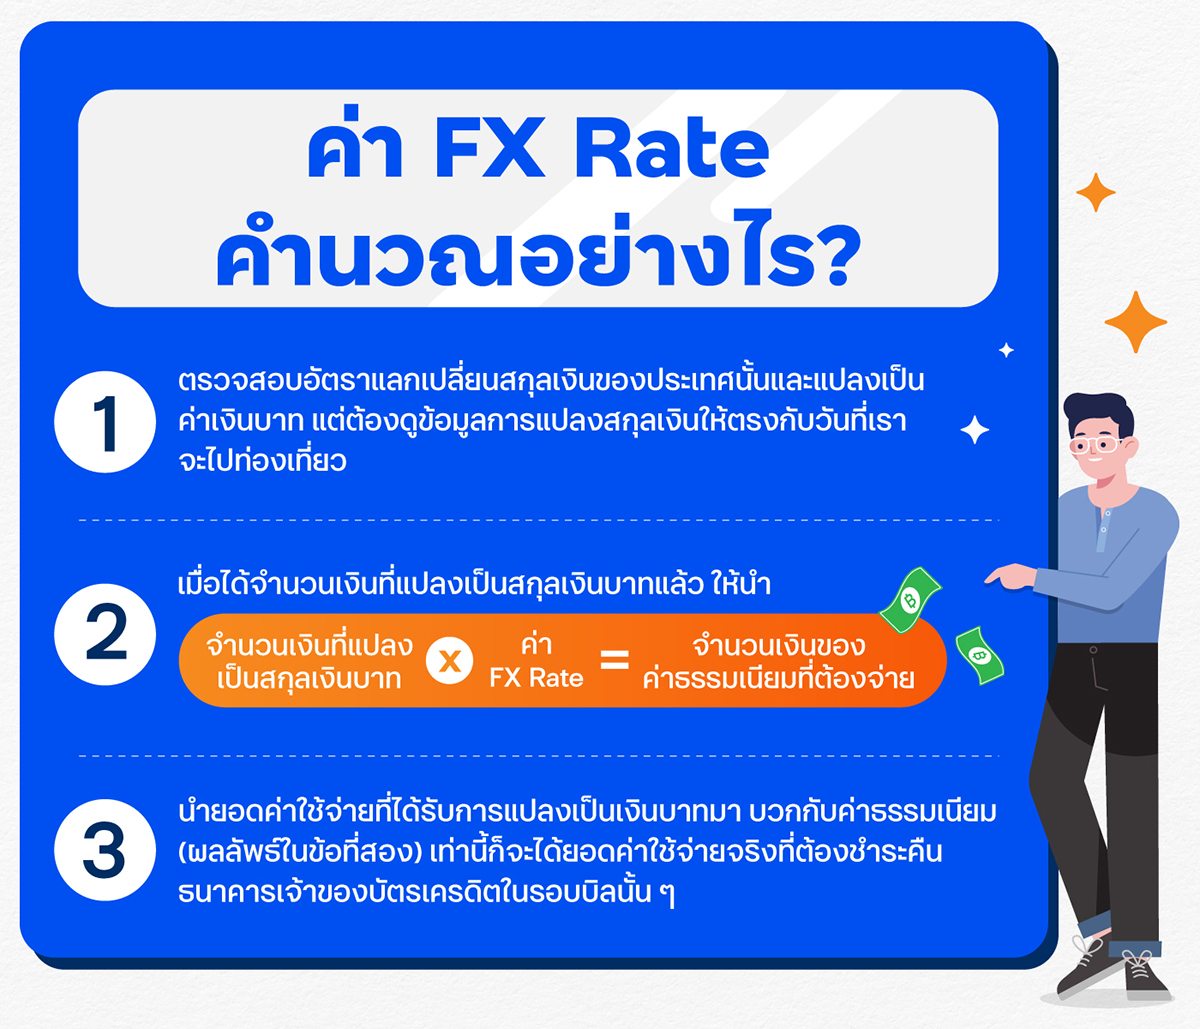 ค่า FX Rate คำนวณอย่างไร